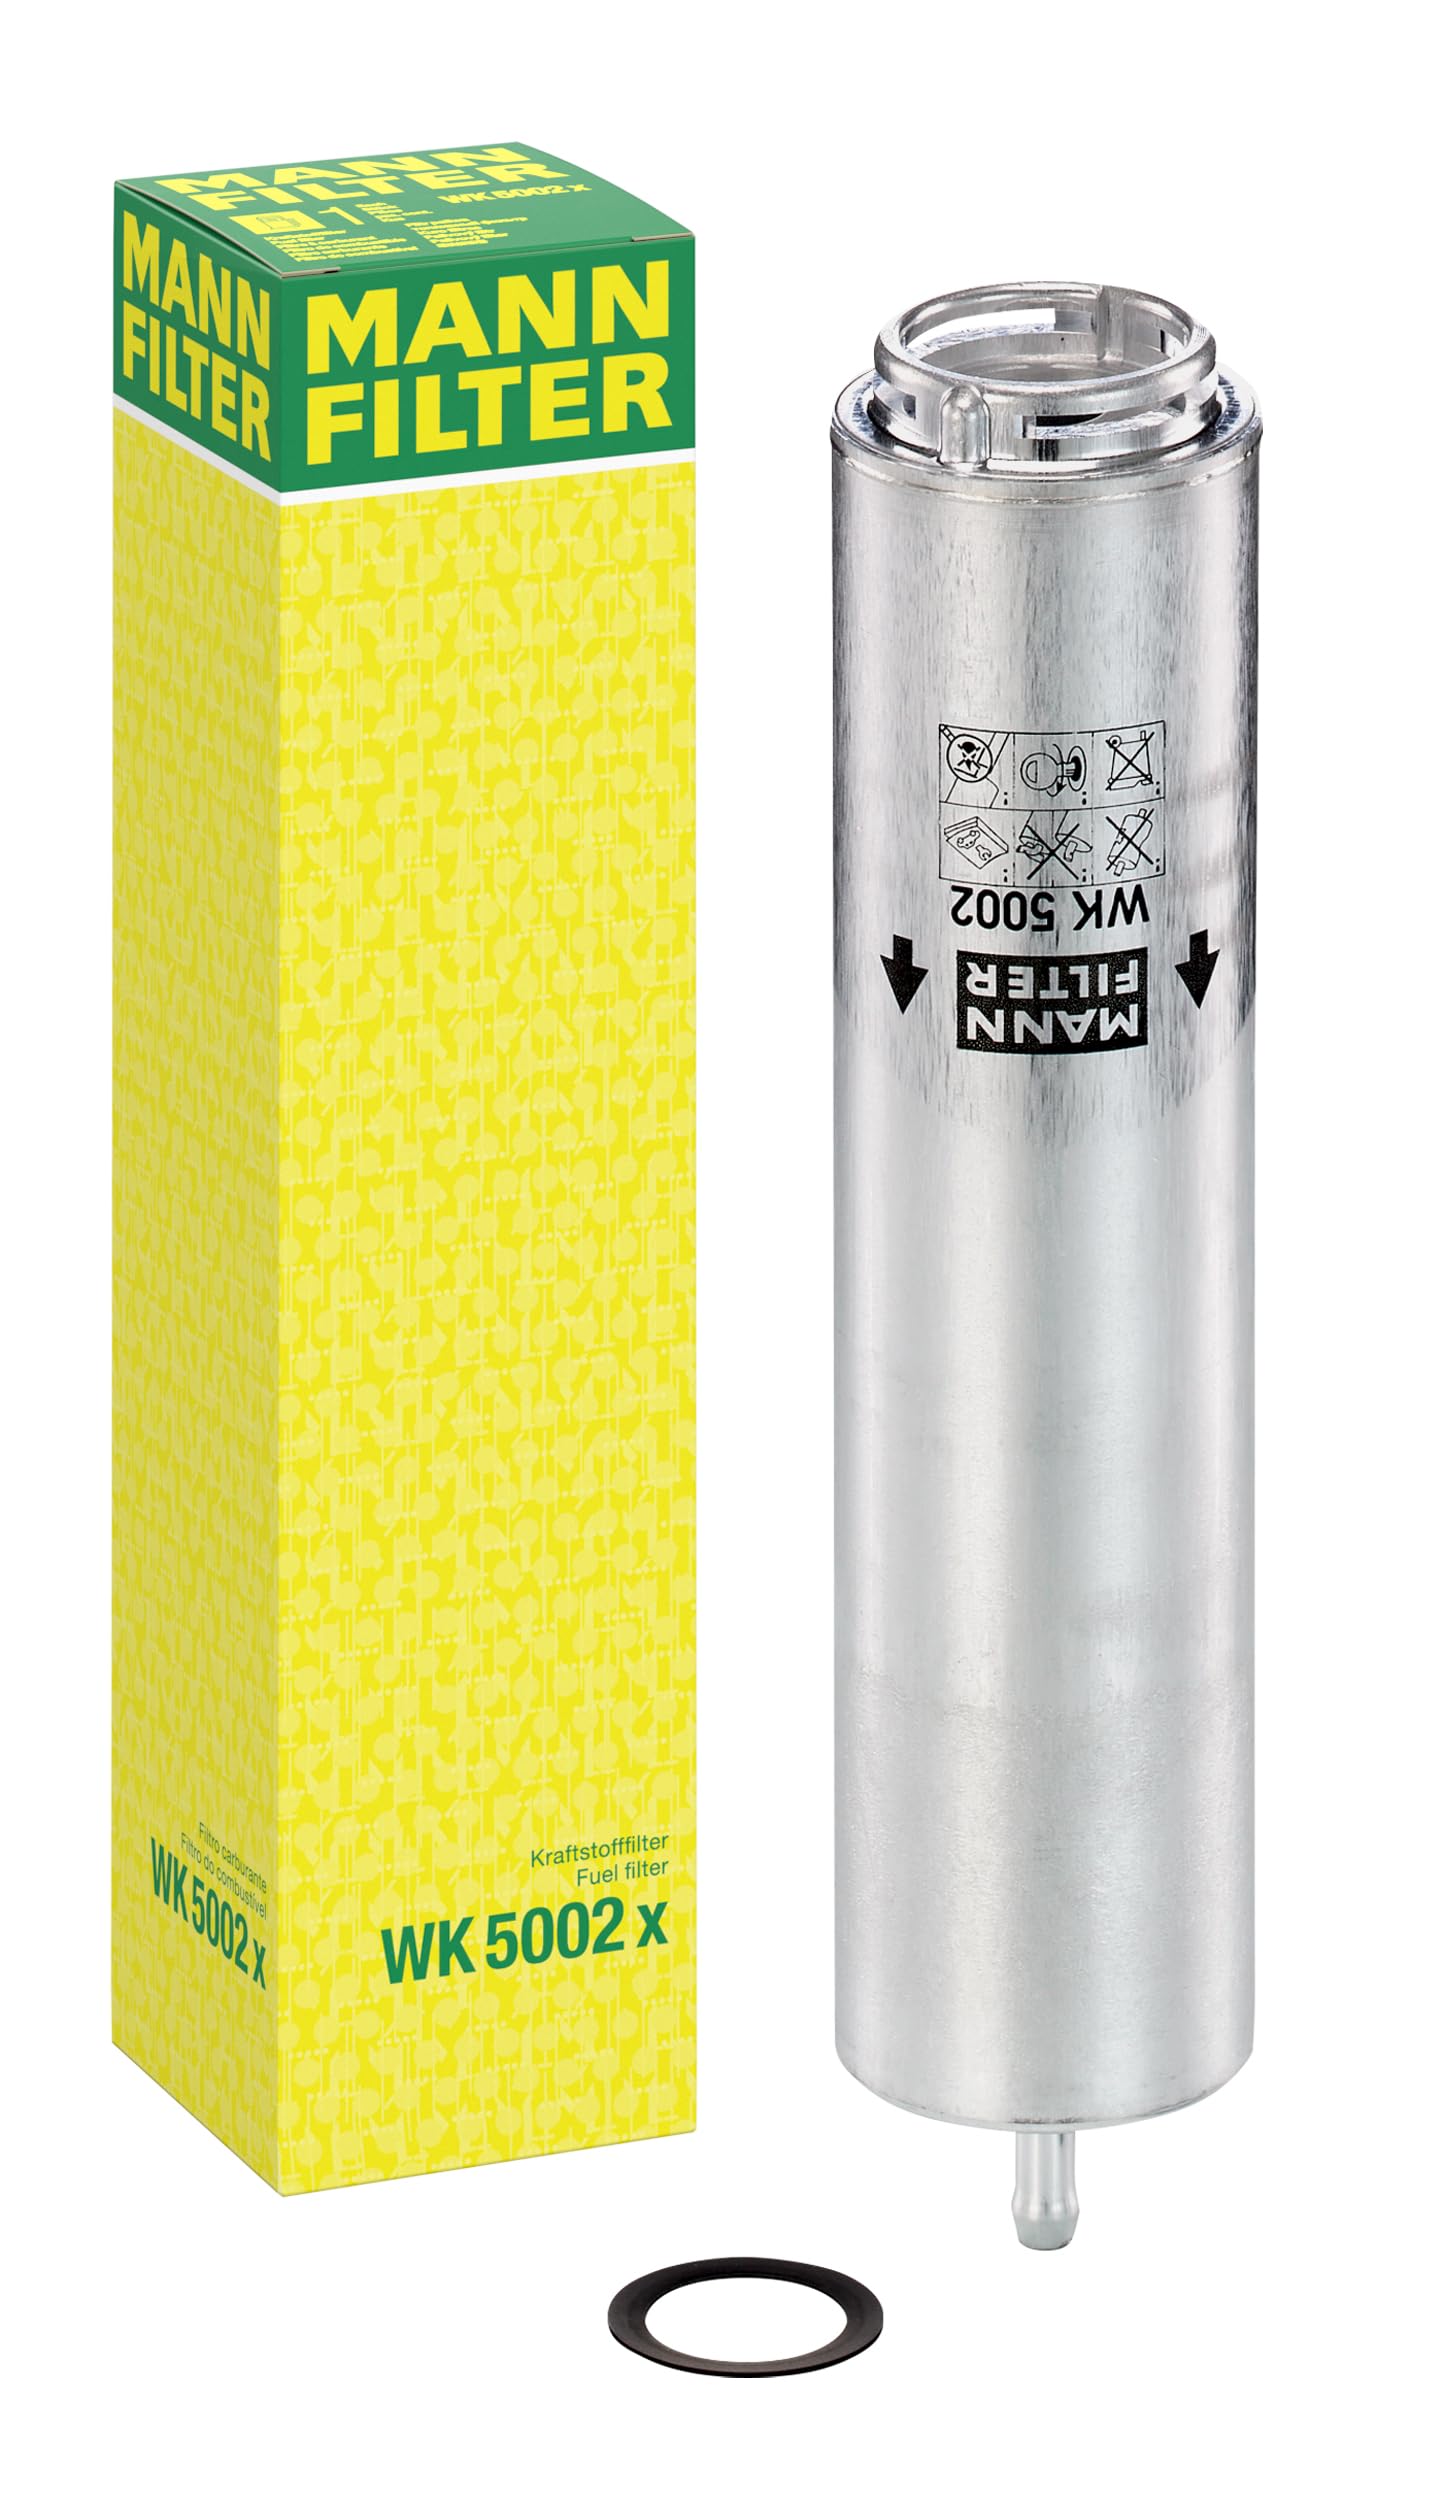 MANN-FILTER WK 5002 X Kraftstofffilter – Kraftstofffilter Satz mit Dichtung / Dichtungssatz – Für PKW von MANN-FILTER